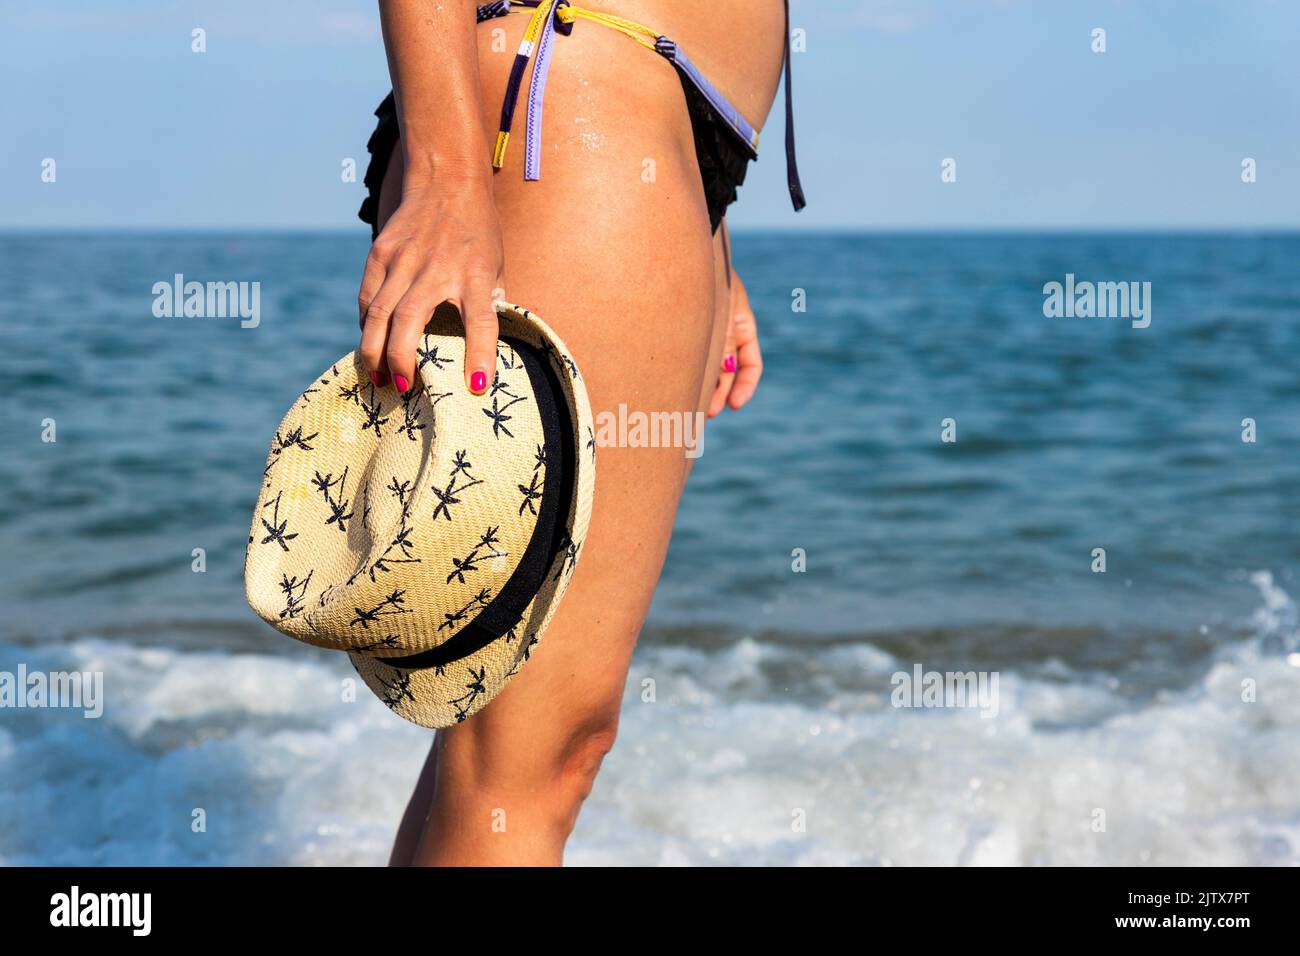 Frau im Bikini mit Strohsonnenhut am sonnigen Strand auf dem Meer. Reise- und Modekonzept. Stockfoto